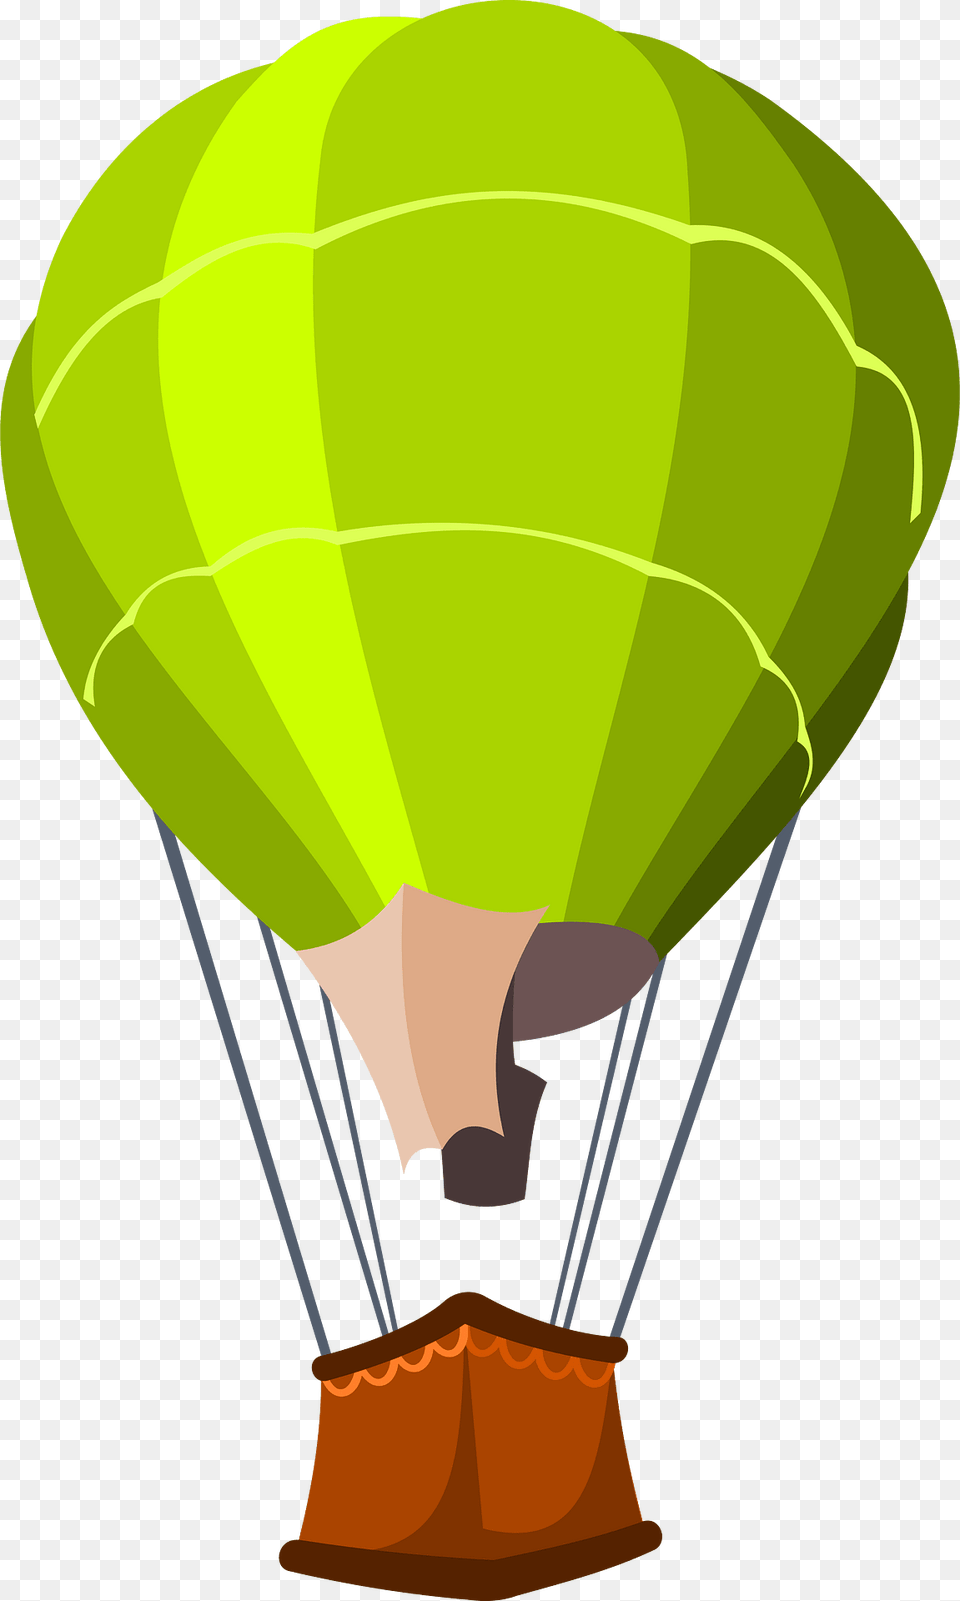 Hot Air Ballooning Clipart, Aircraft, Hot Air Balloon, Transportation, Vehicle Free Transparent Png